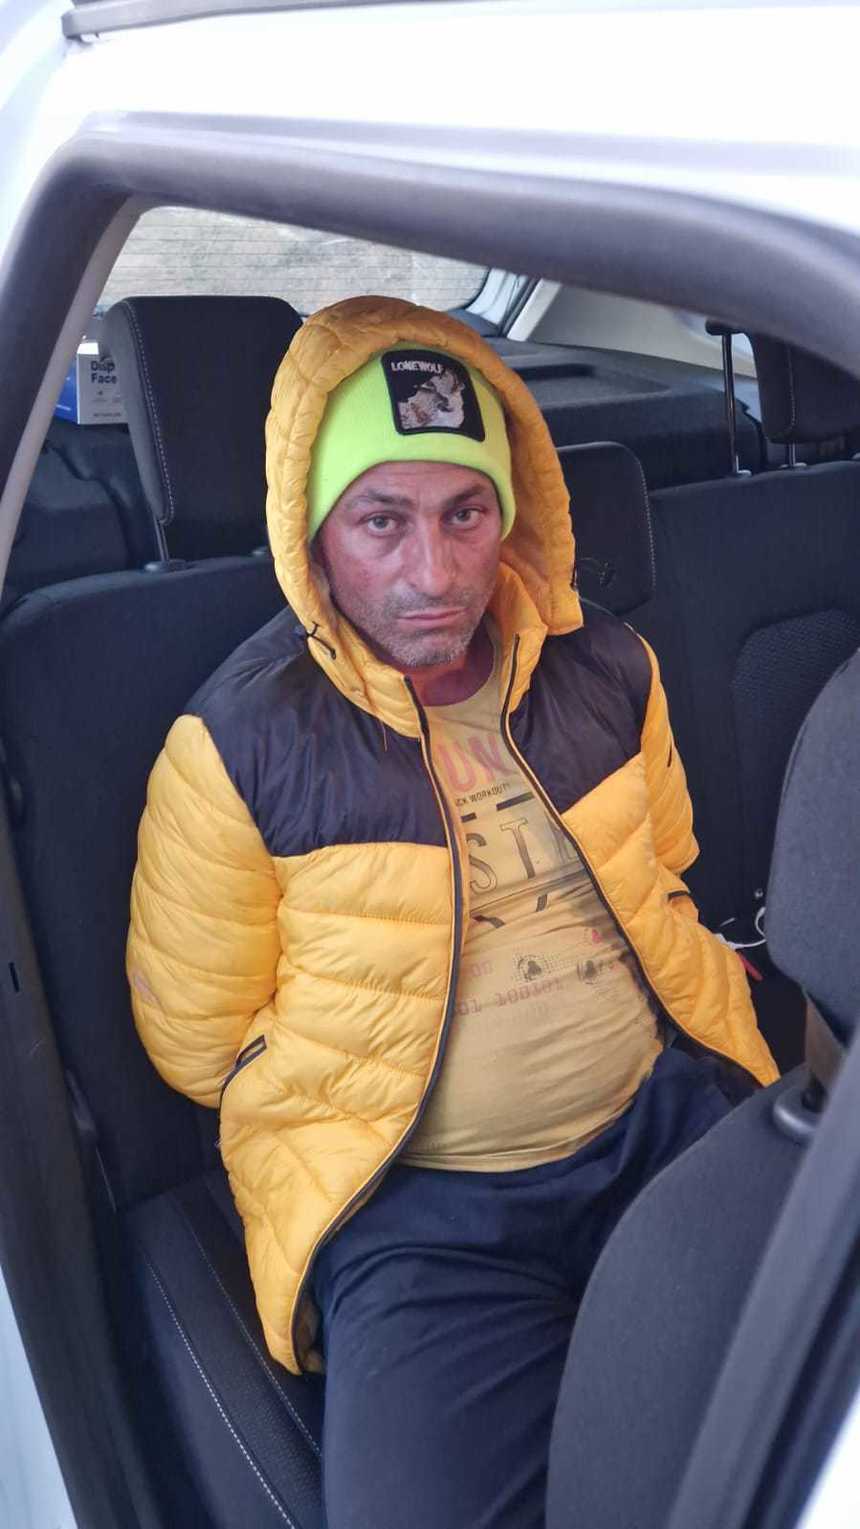 Bărbatul care le-a răpit pe cele două surori din Braşov, găsit în trafic, în comuna prahoveană Valea Călugărească / Fetele erau cu el în autoturism - VIDEO